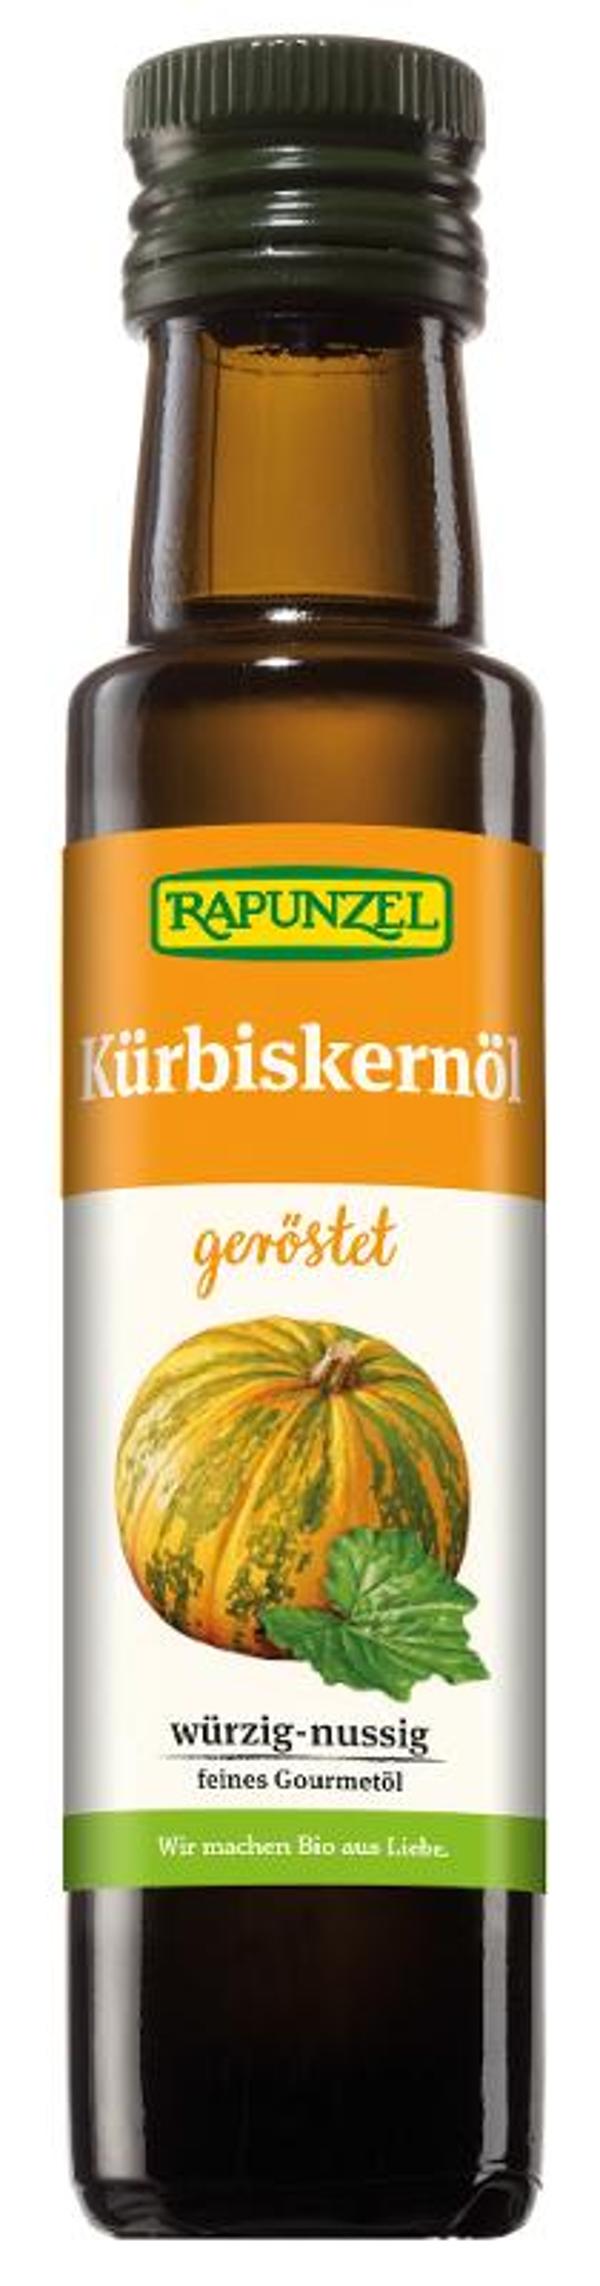 Produktfoto zu Kürbiskernöl von Rapunzel